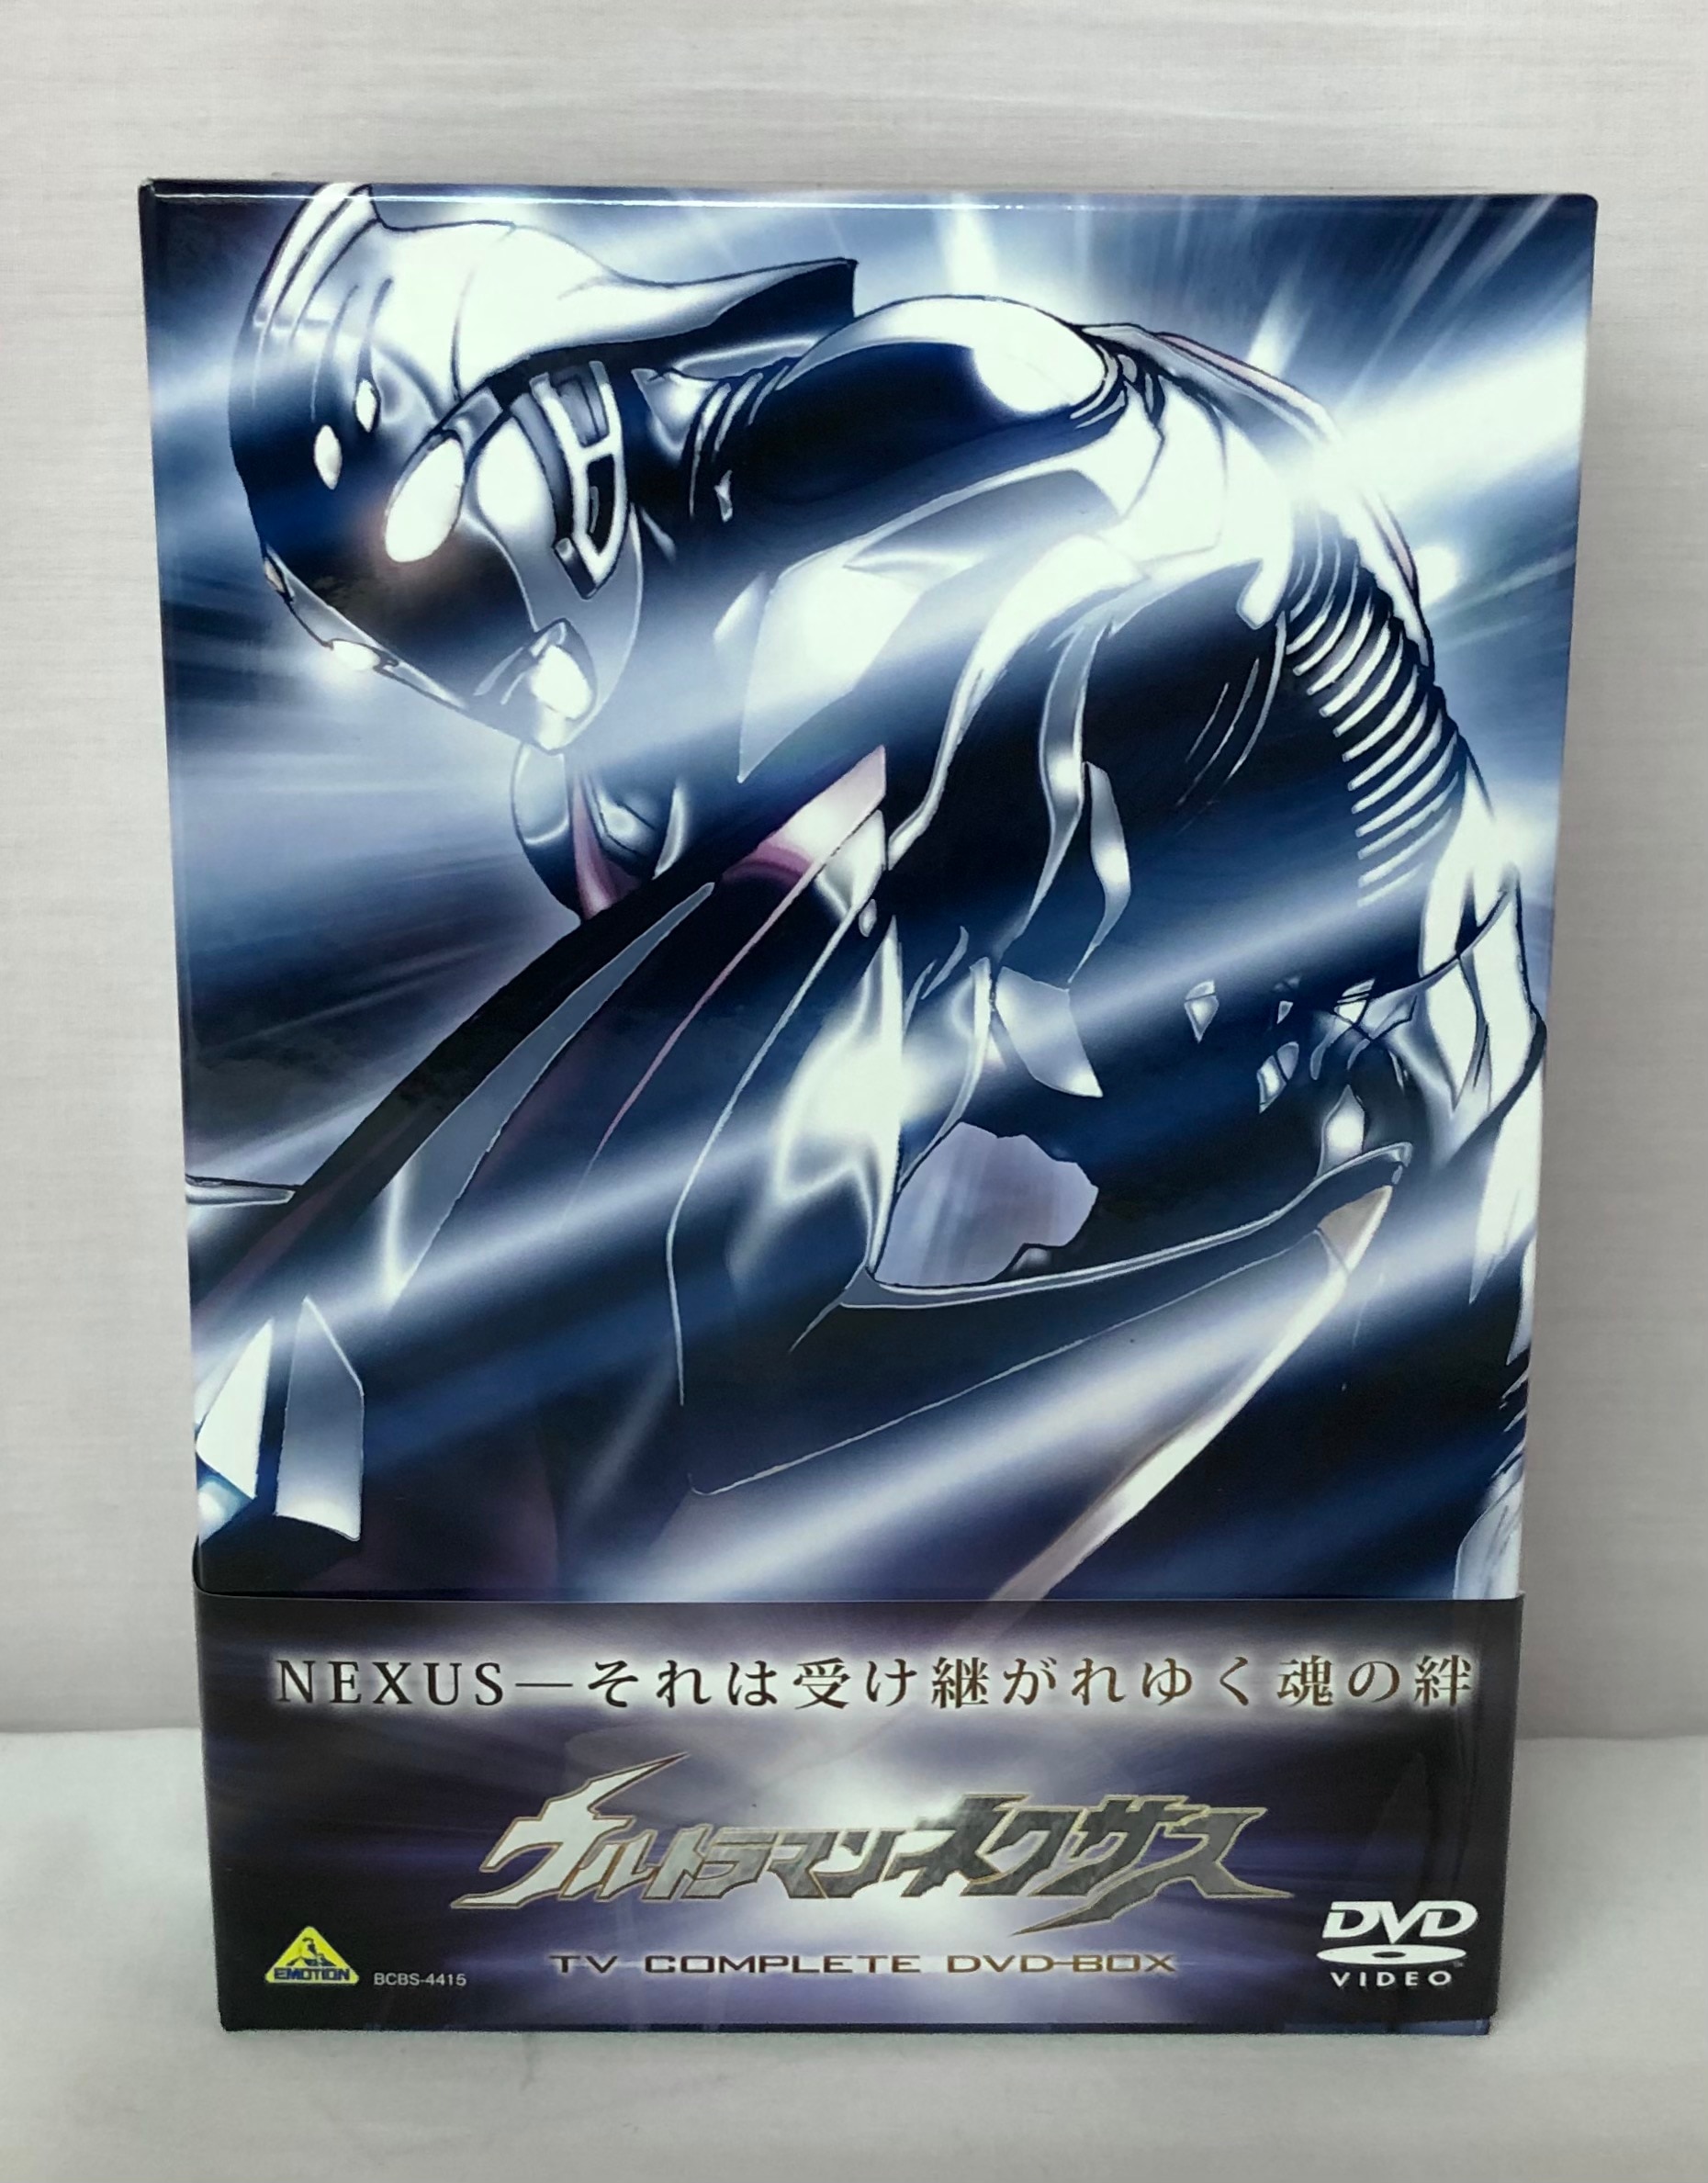 ウルトラマン/特撮DVD ウルトラマンネクサス TV COMPLETE DVD-BOX ※一